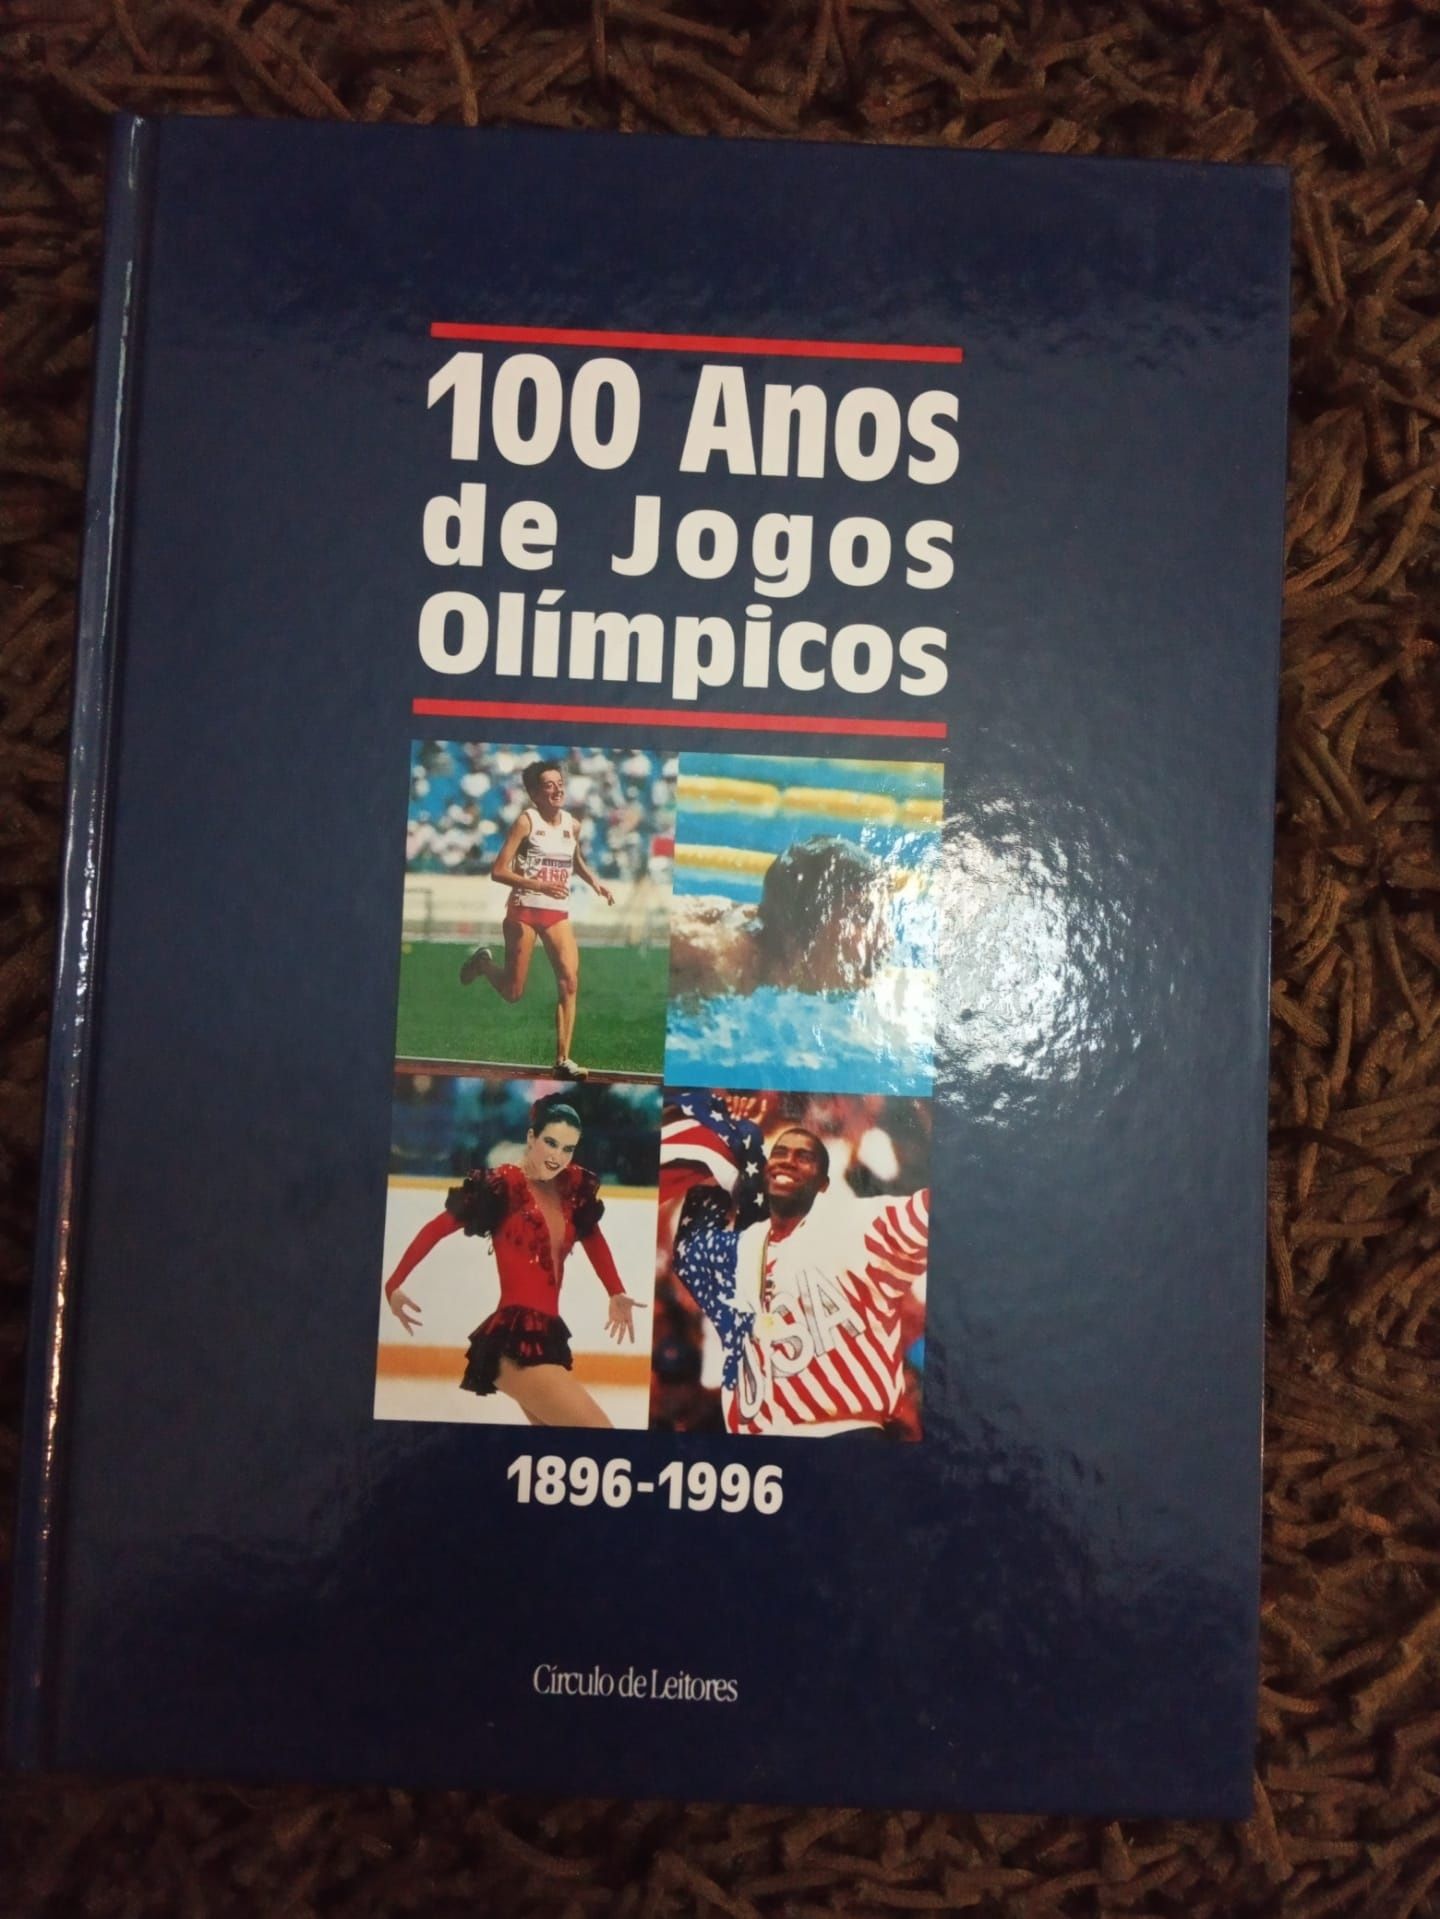 100 Anos de Jogos Olímpicos